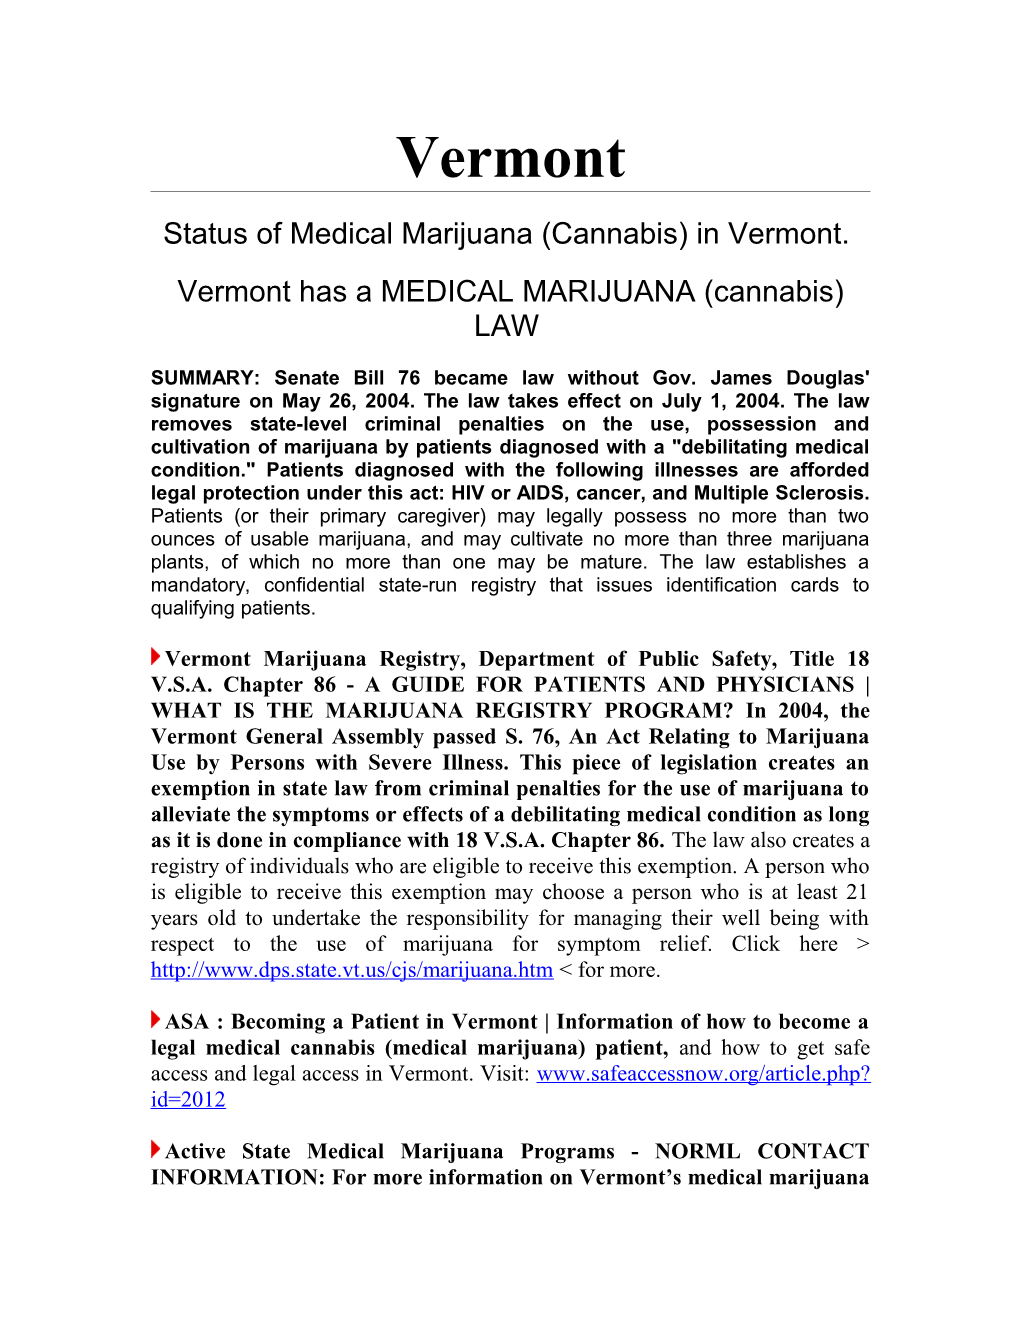 Status of Medical Marijuana (Cannabis) in Vermont